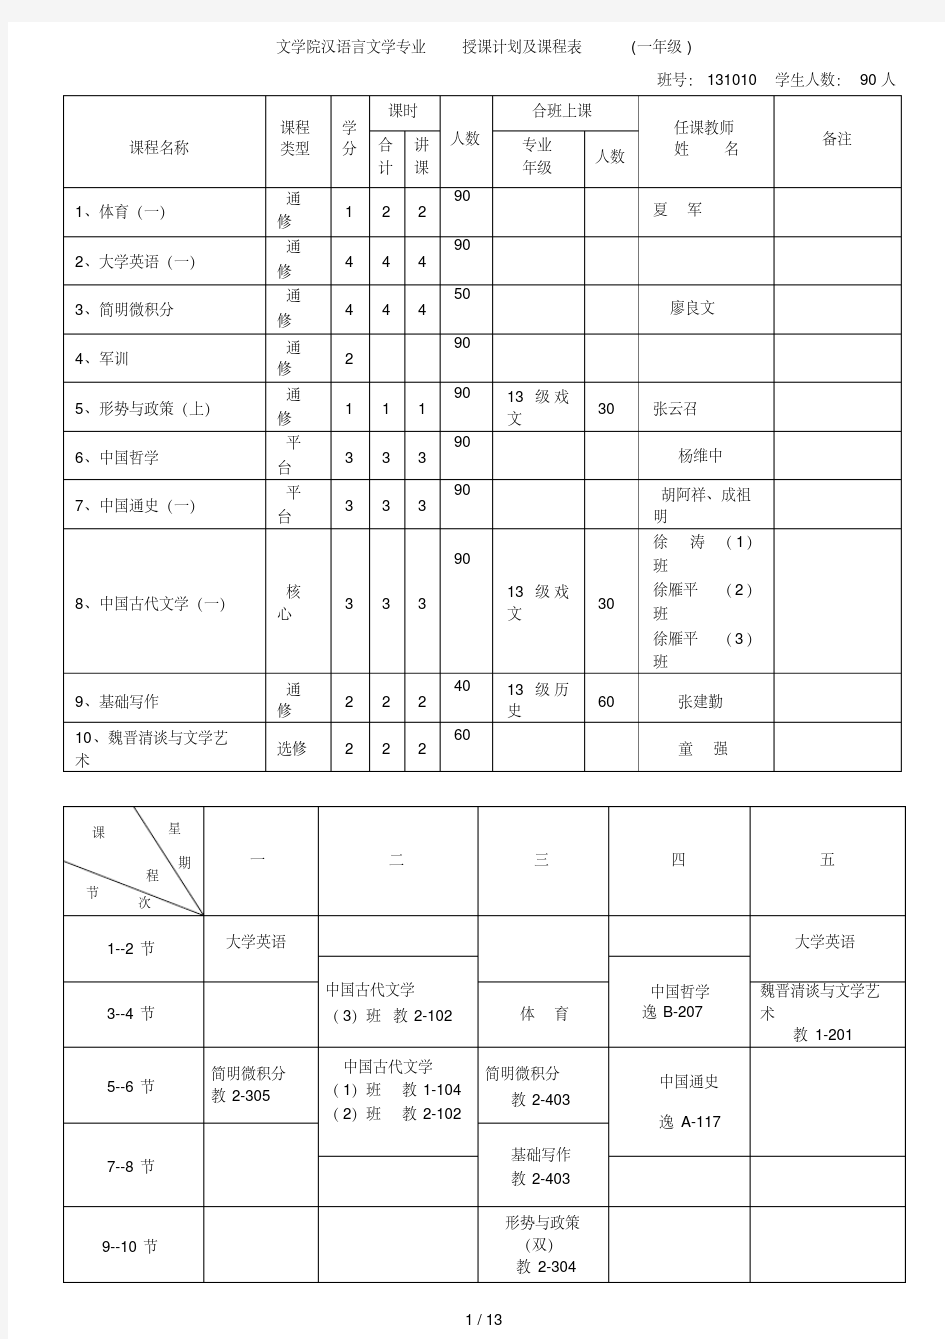 文学院汉语言文学专业授课计划及课程表(一年级)